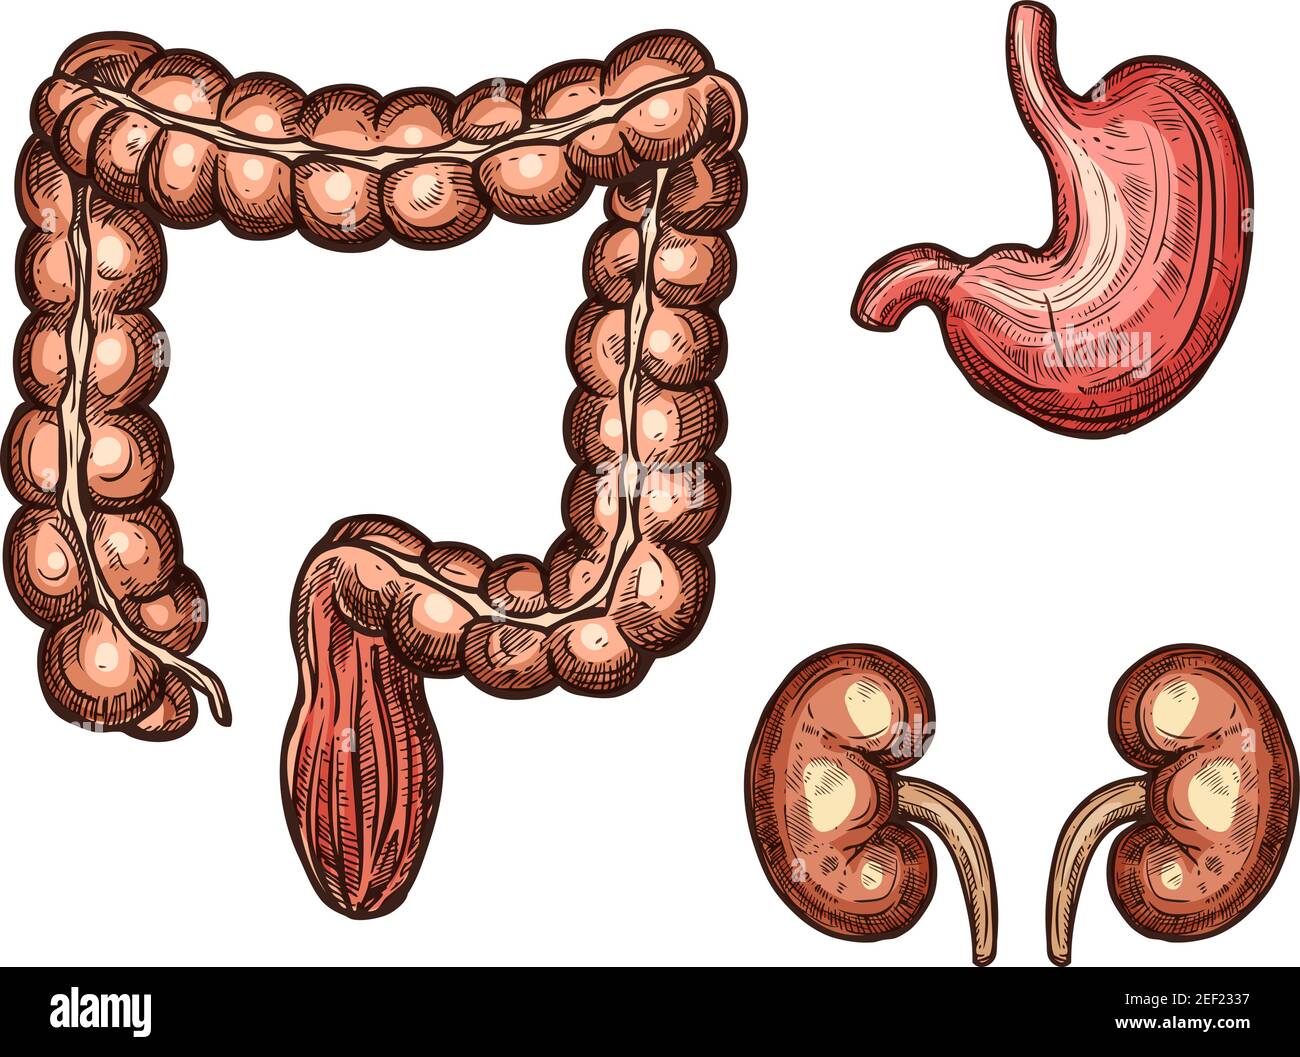 Icone di schizzi di esofago, milza e reni di organi umani. Vettore isolato insieme di apparato digerente e urogenitale organo vitale della cavità addominale per Illustrazione Vettoriale